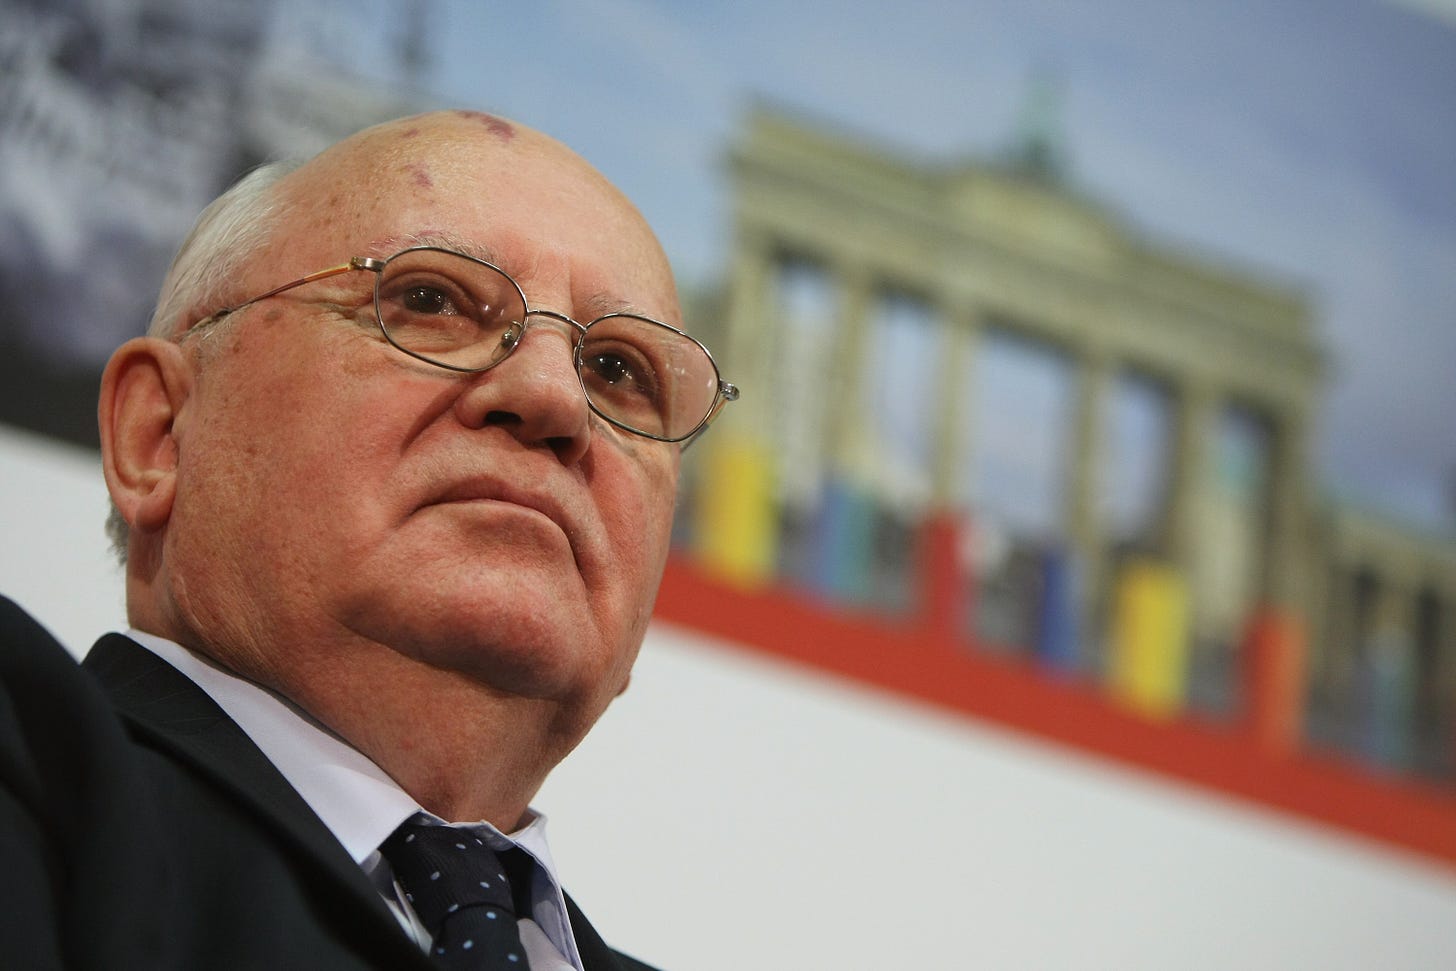 MIkhail Gorbachev